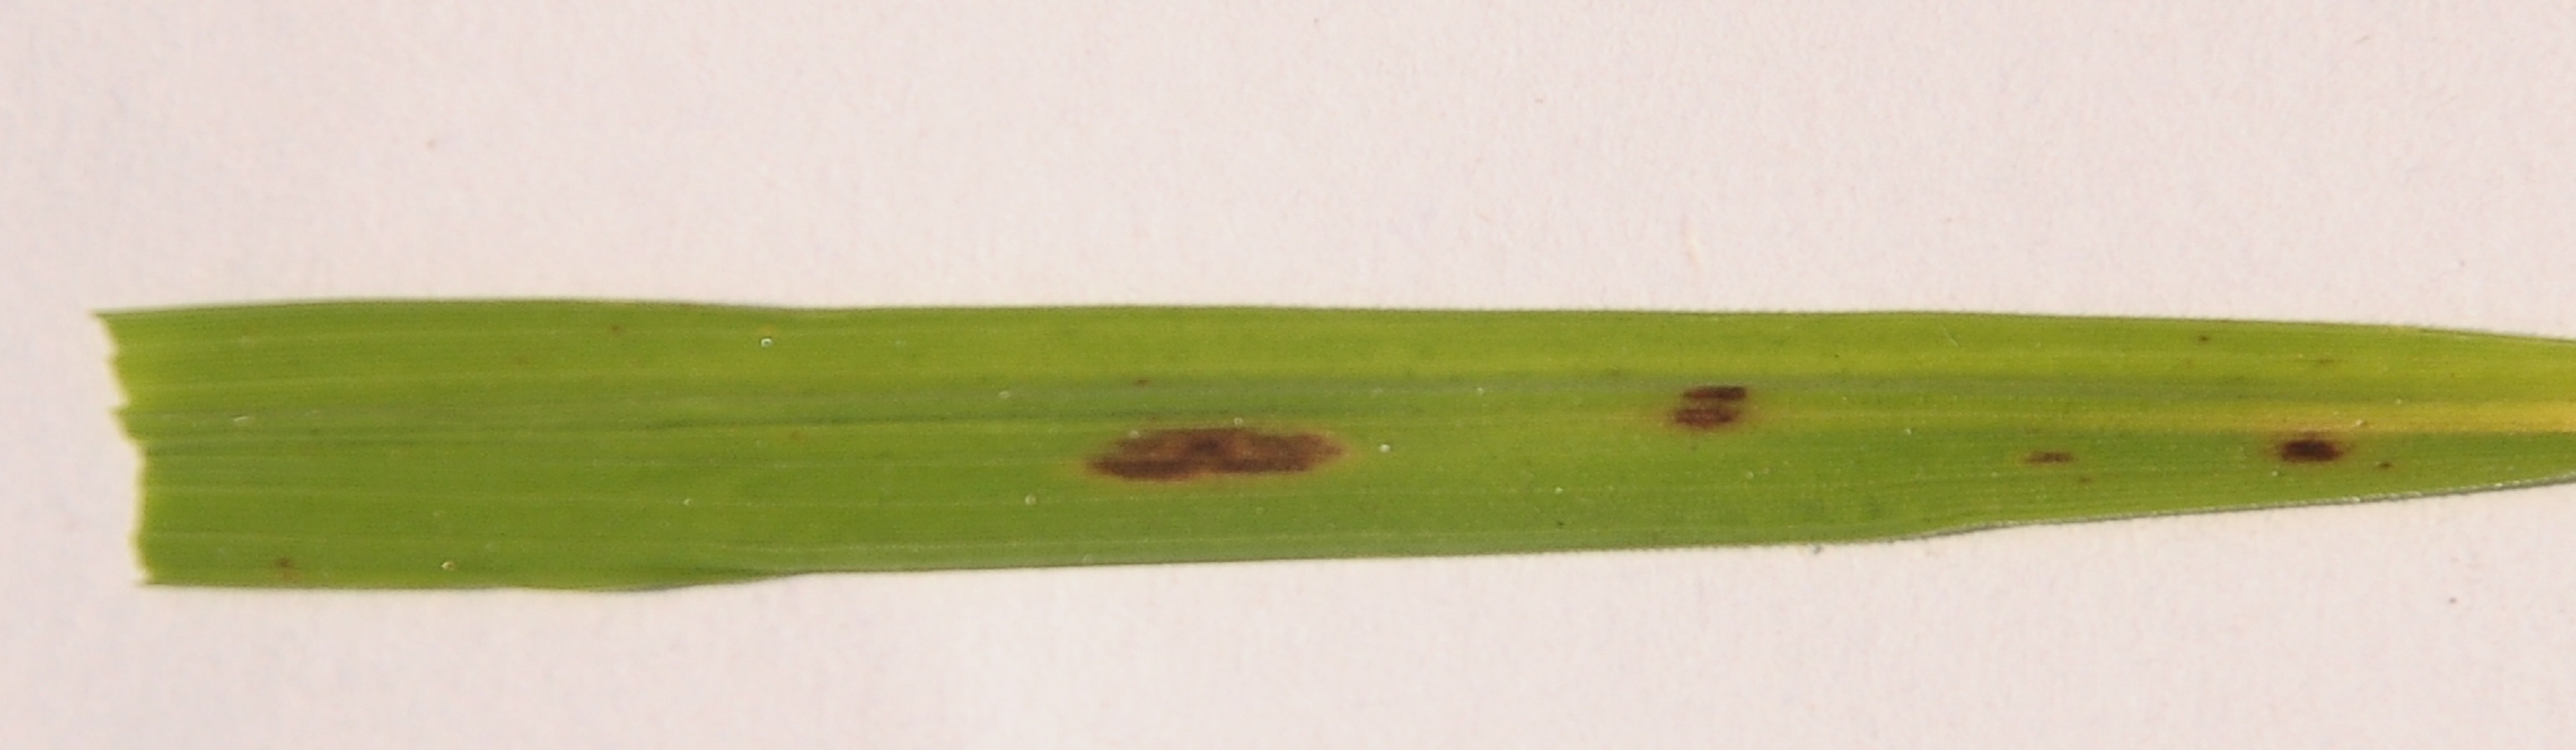 rice leaf image